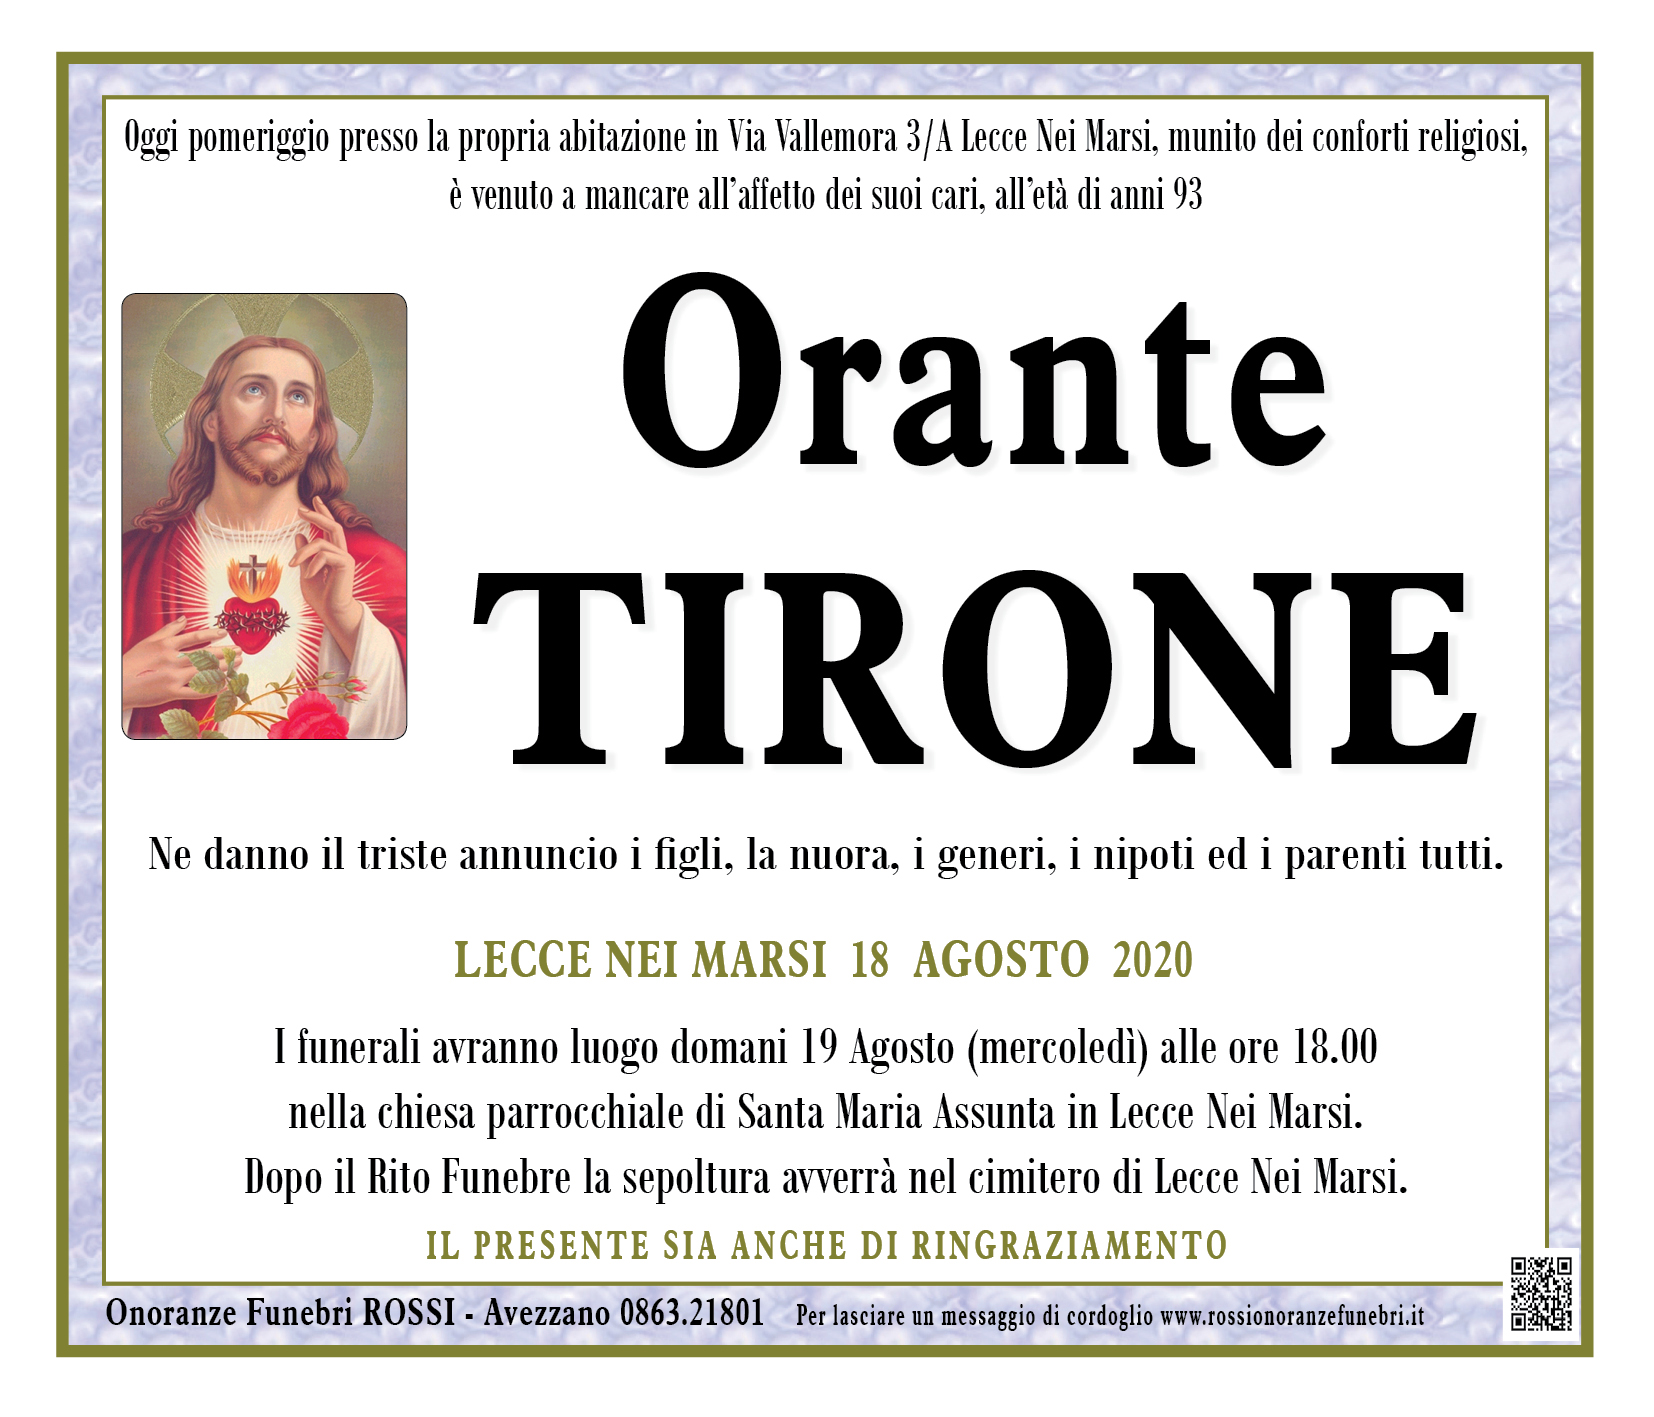 Orante Tirone